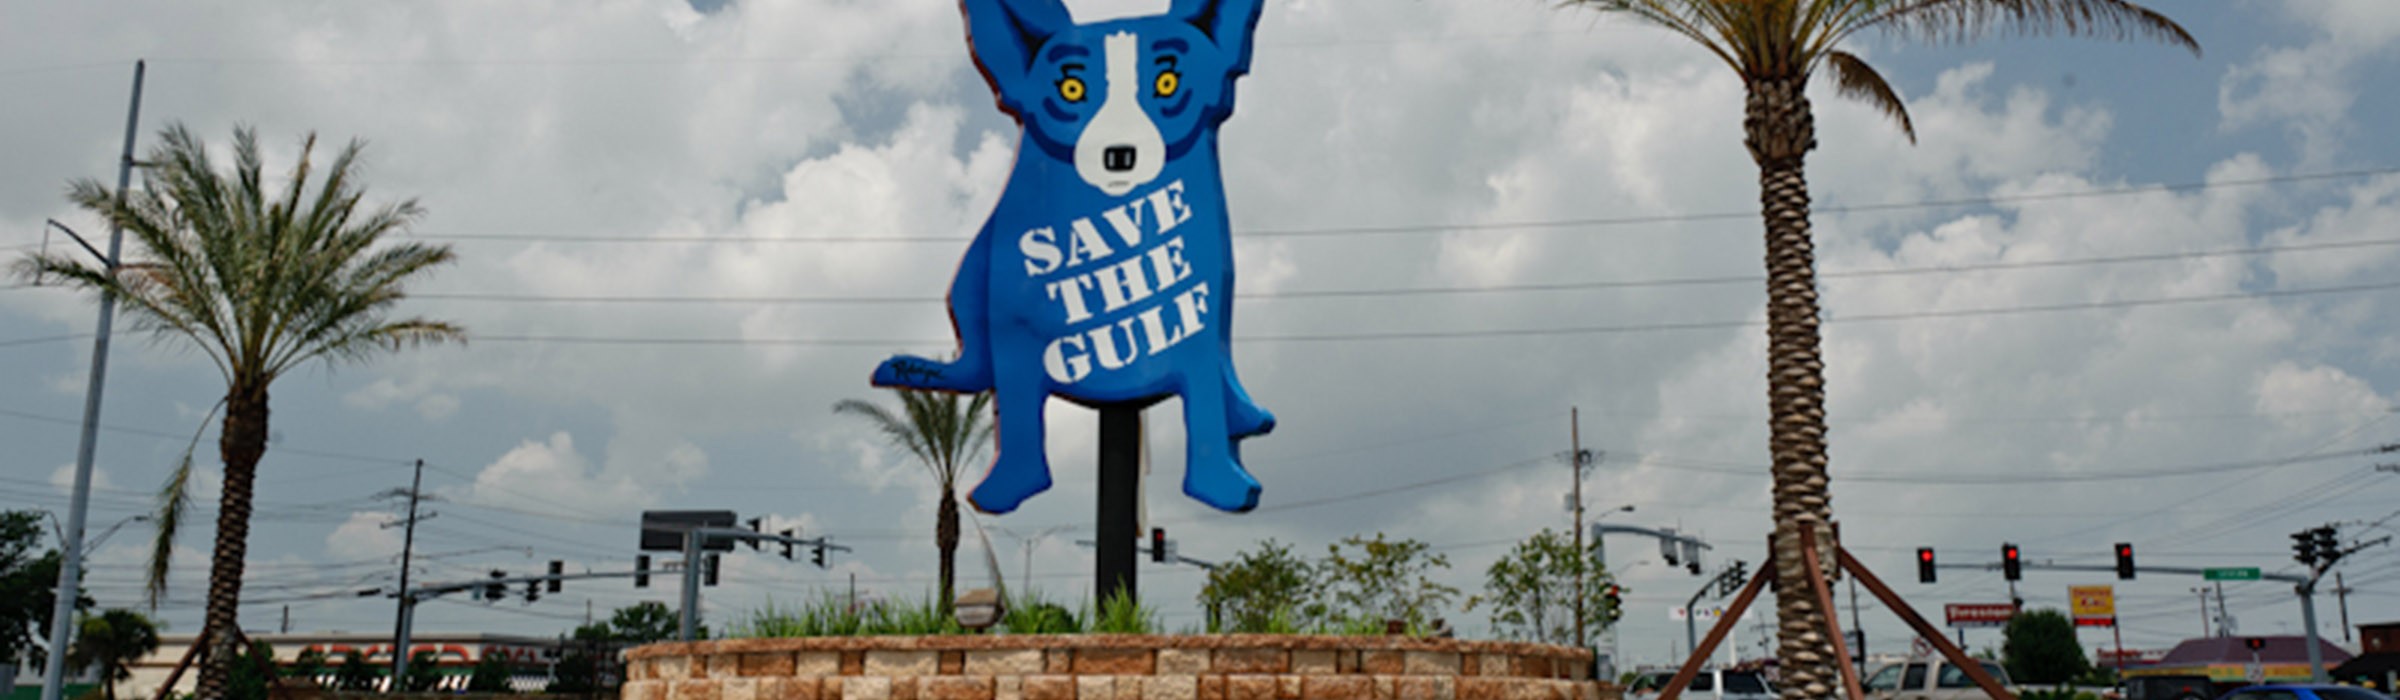 Blue Dog - Save the Gulf